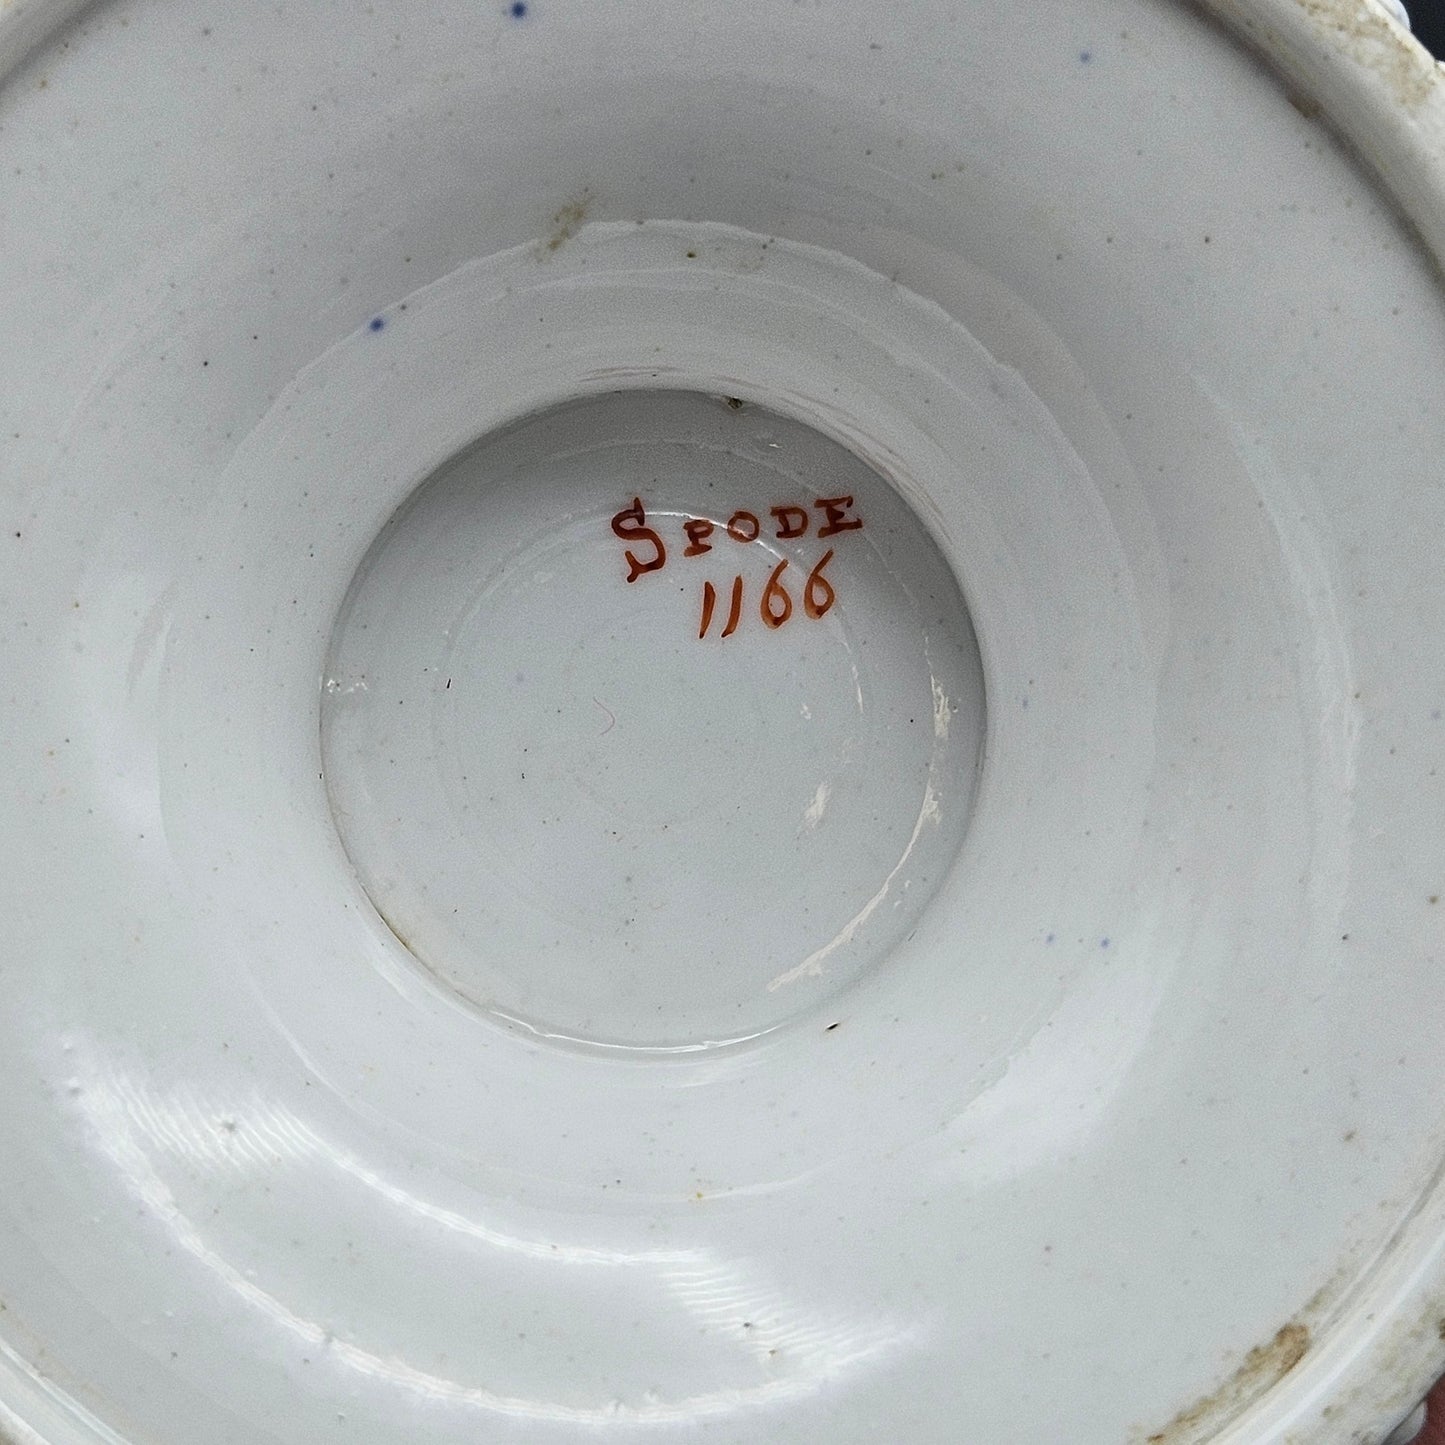 Regency Period Spode Porcelain Spill Vase 1166